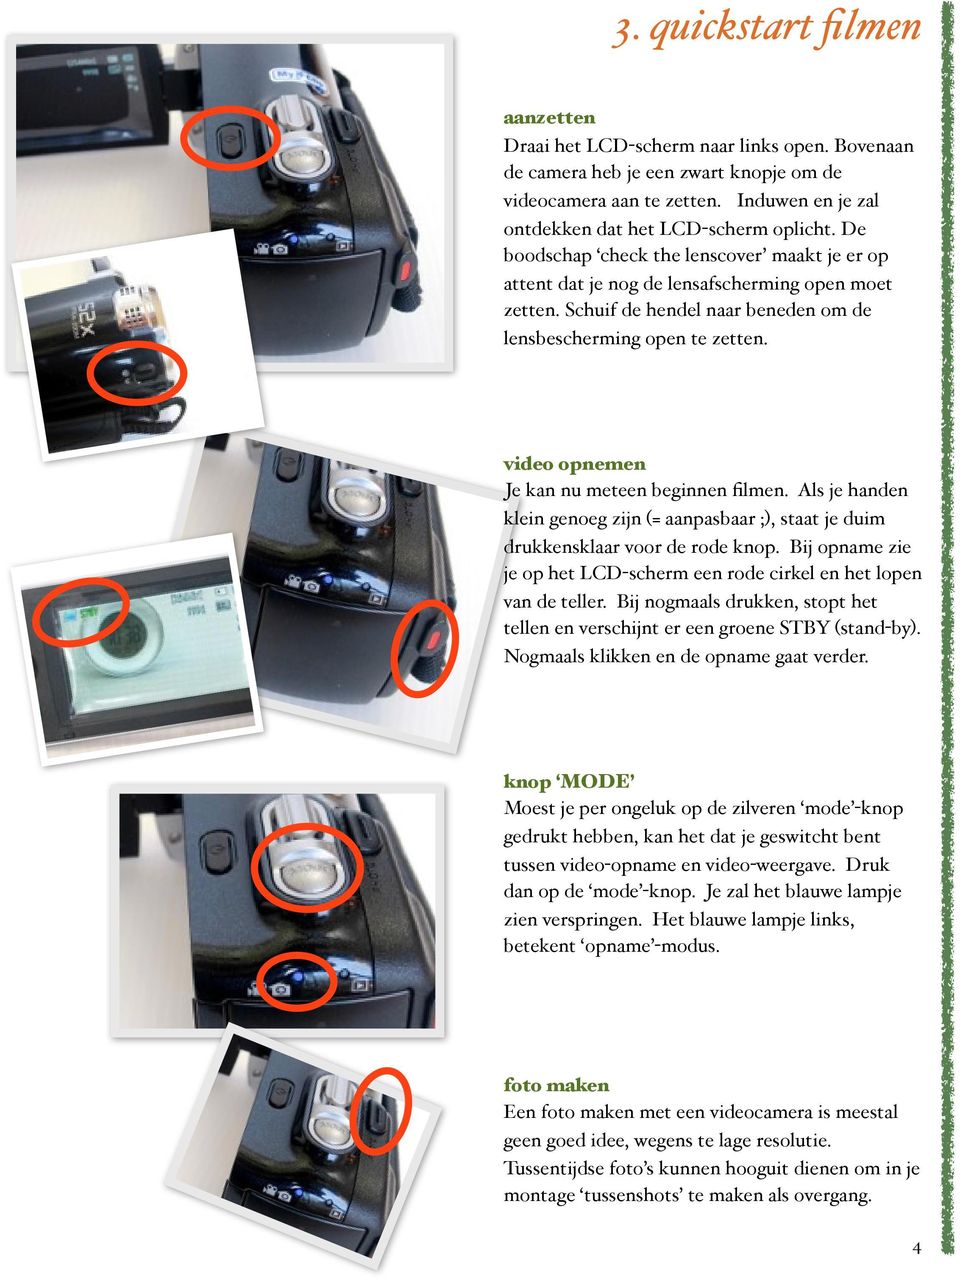 video opnemen Je kan nu meteen beginnen filmen. Als je handen klein genoeg zijn (= aanpasbaar ;), staat je duim drukkensklaar voor de rode knop.